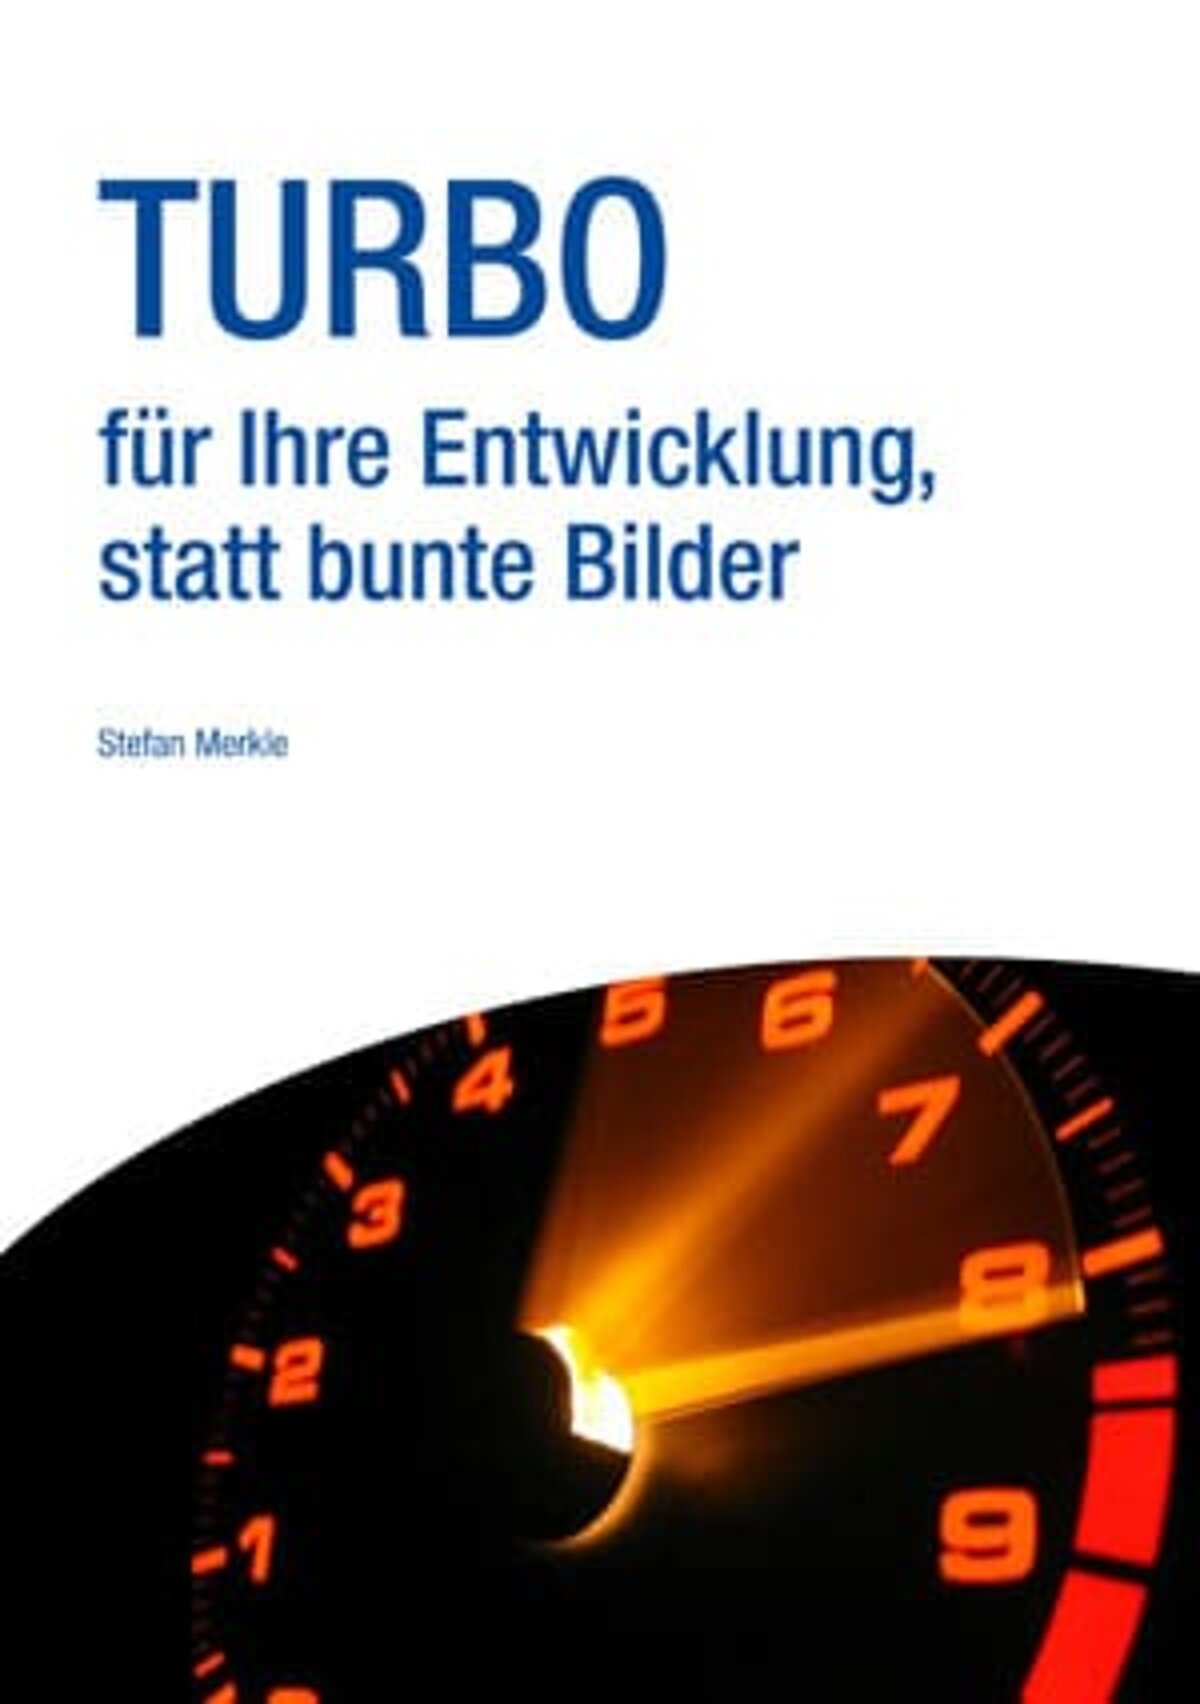 merkle-partner-ebook-turbo-fuer-die-entwicklung-titelbild